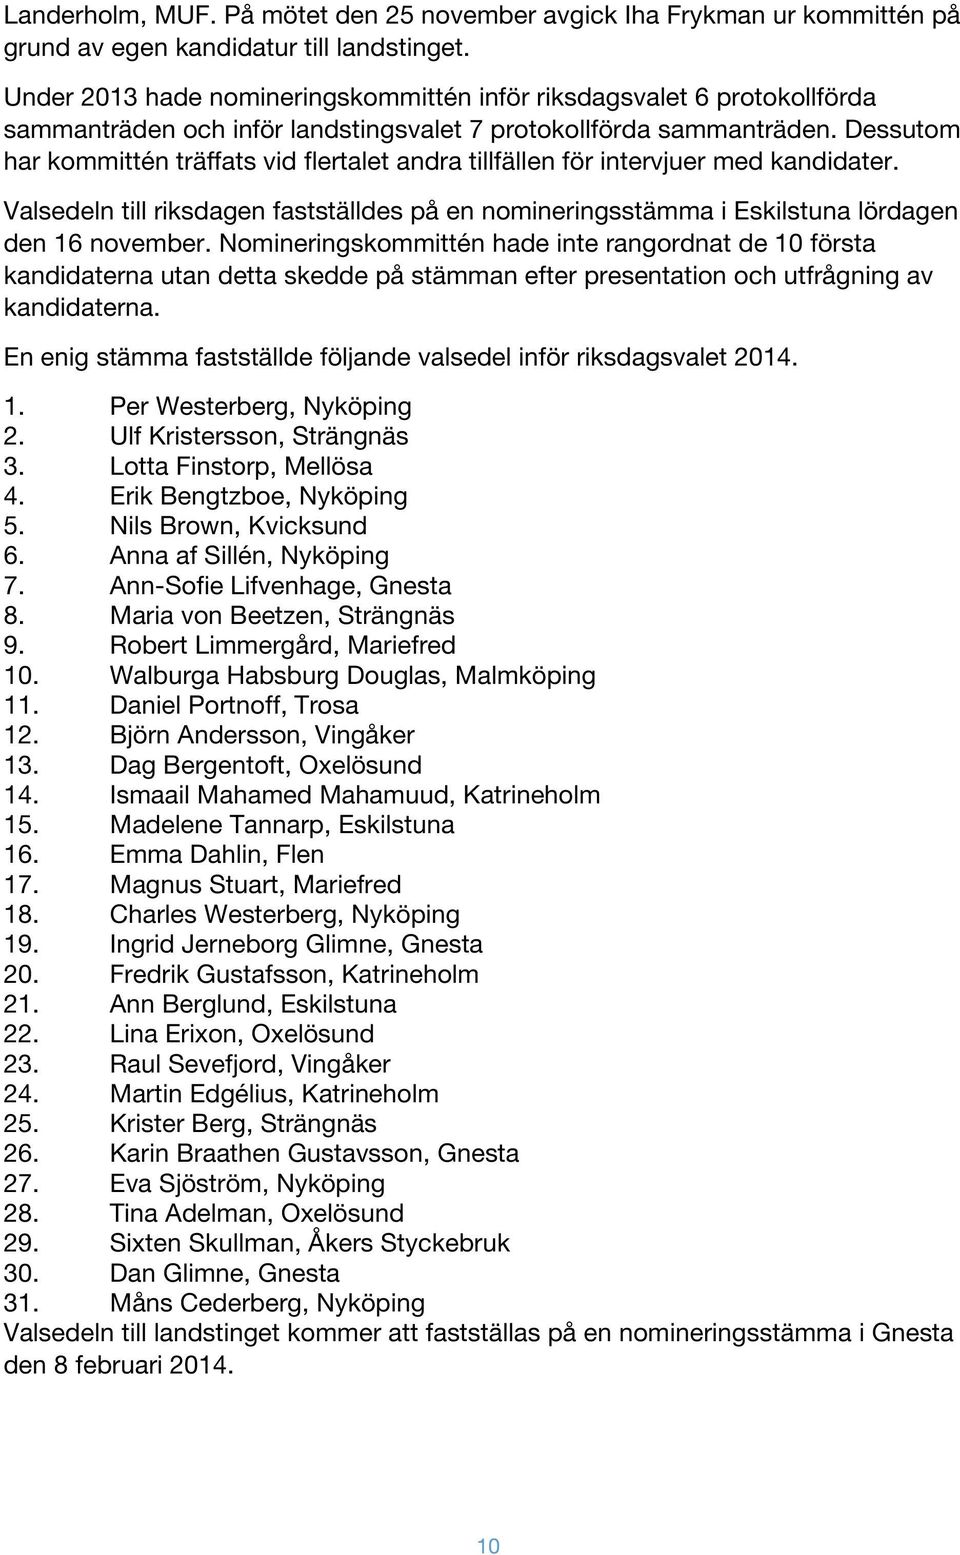 Dessutom har kommittén träffats vid flertalet andra tillfällen för intervjuer med kandidater. Valsedeln till riksdagen fastställdes på en nomineringsstämma i Eskilstuna lördagen den 16 november.